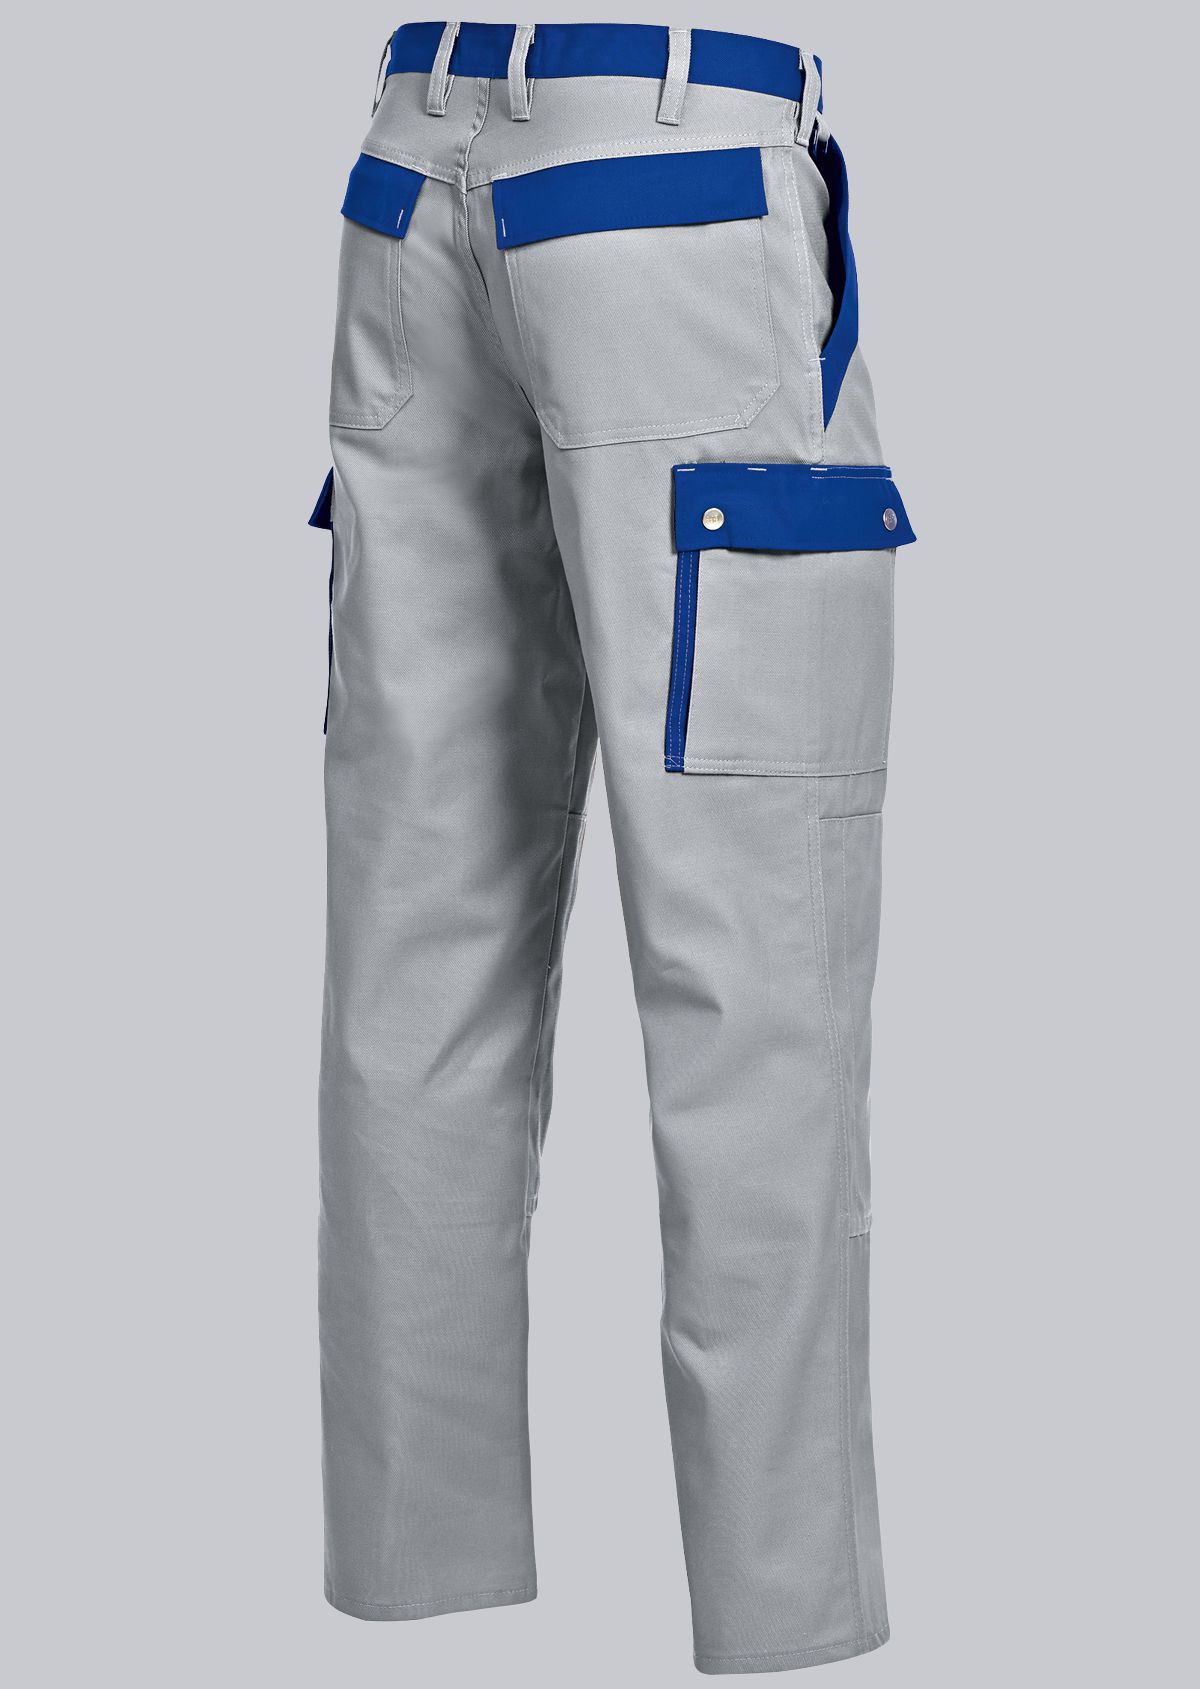 BP® Pantalon cargo confort avec genouillères